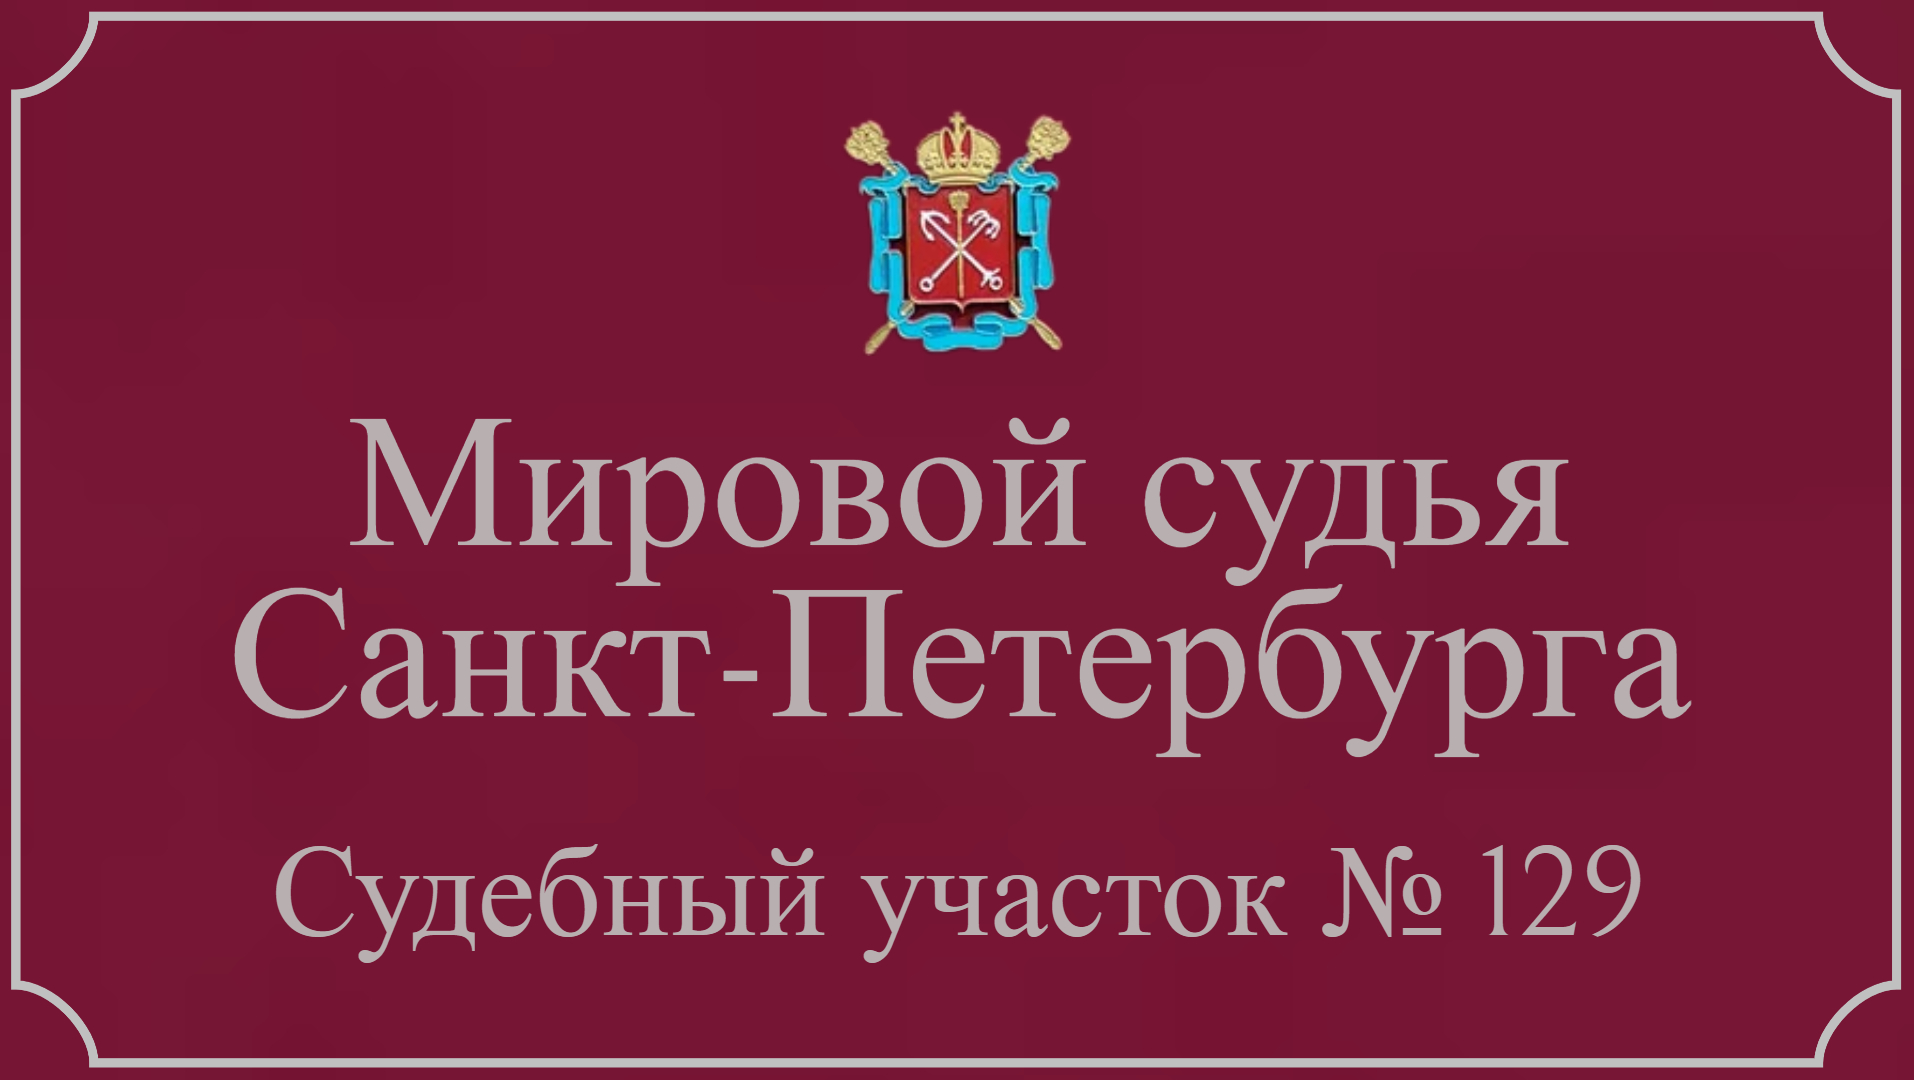 Информация по 129 судебному участку в Санкт-Петербурге.